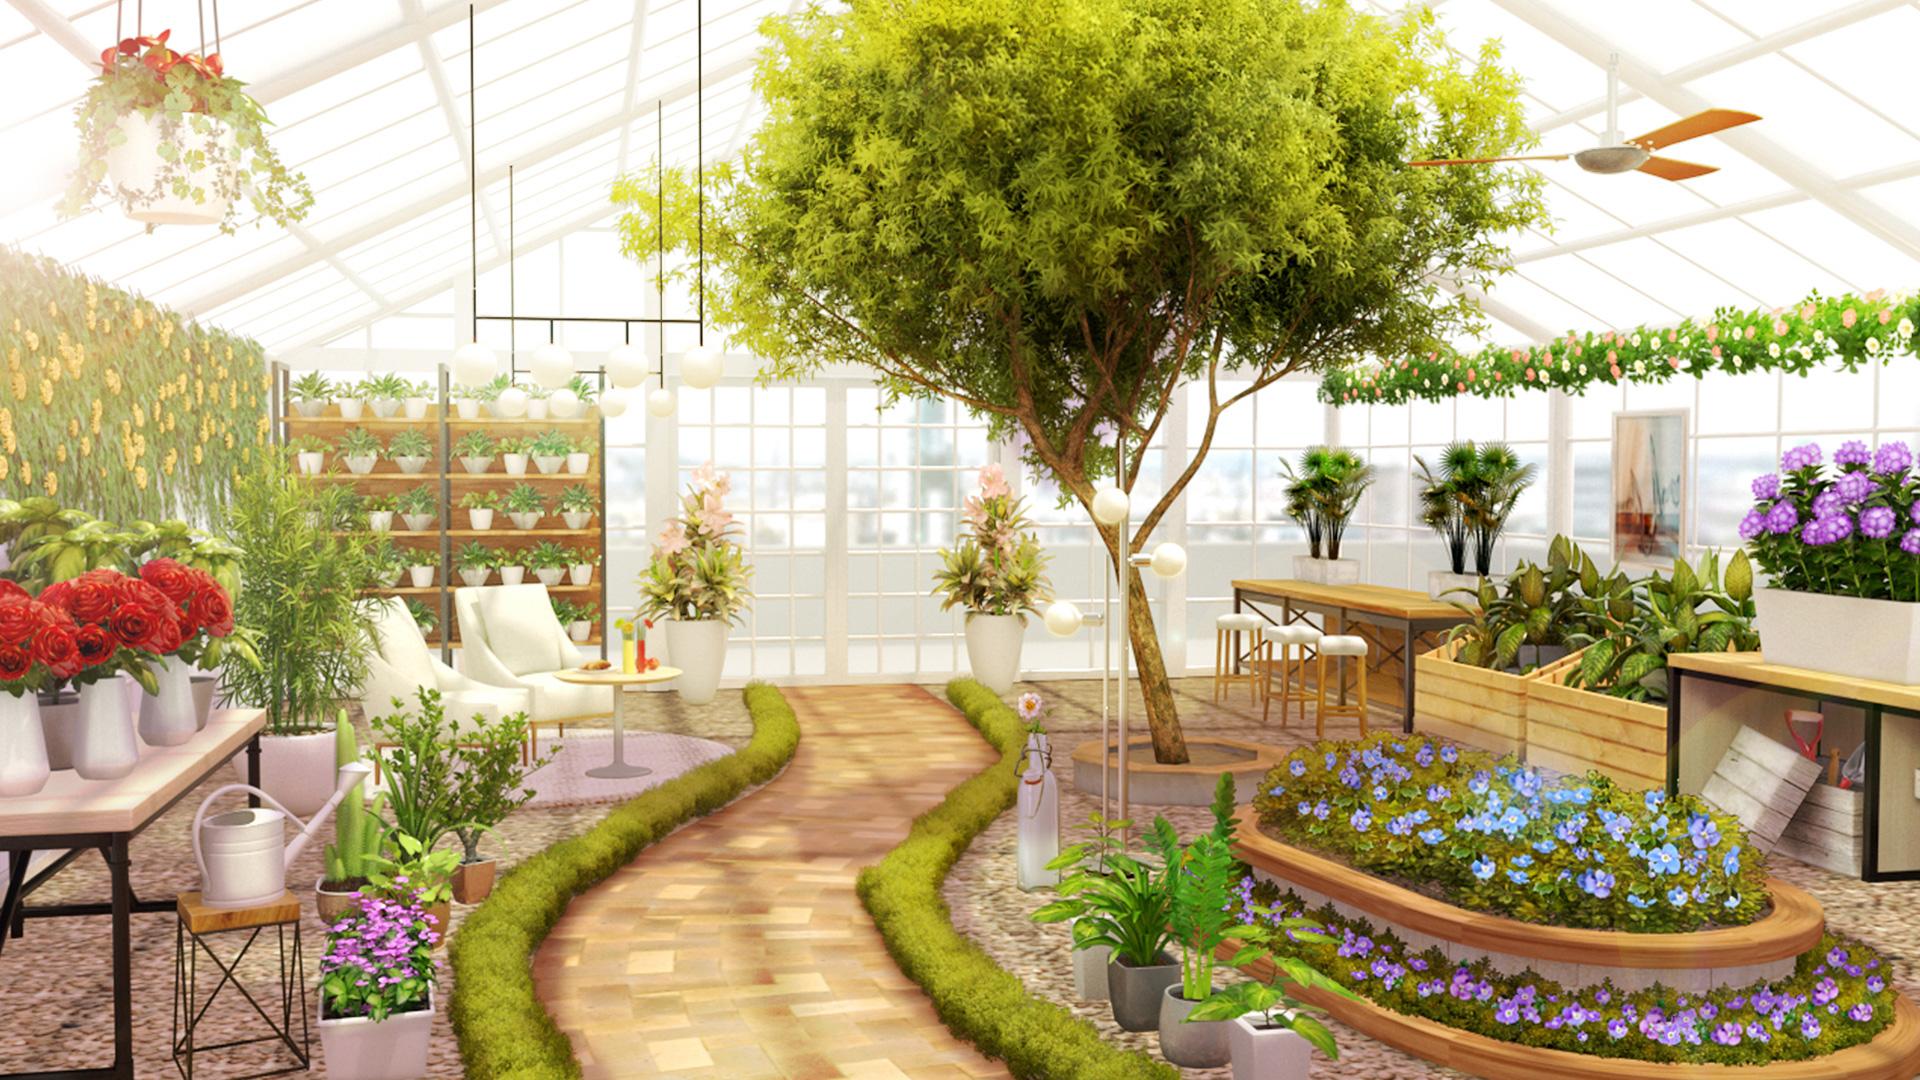 Home Design : My Dream Garden 1.21.0 Screenshot 8